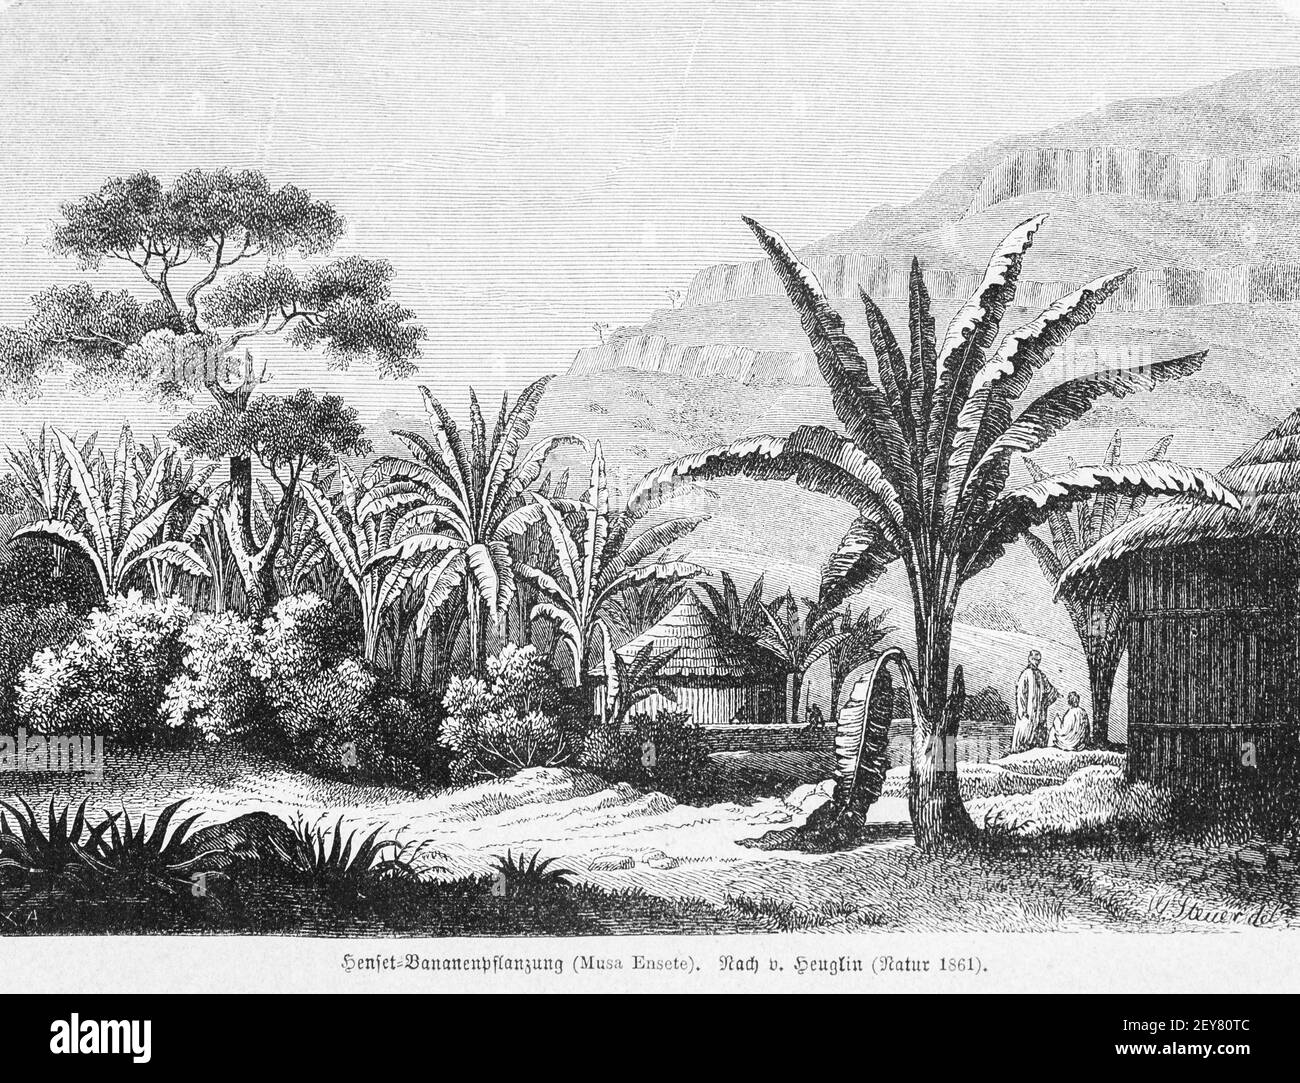 Pequeño pueblo con plantación de plátanos, Dr. Richard Andree, Abessinien, Land und Volk, Leipzig 1869 Foto de stock